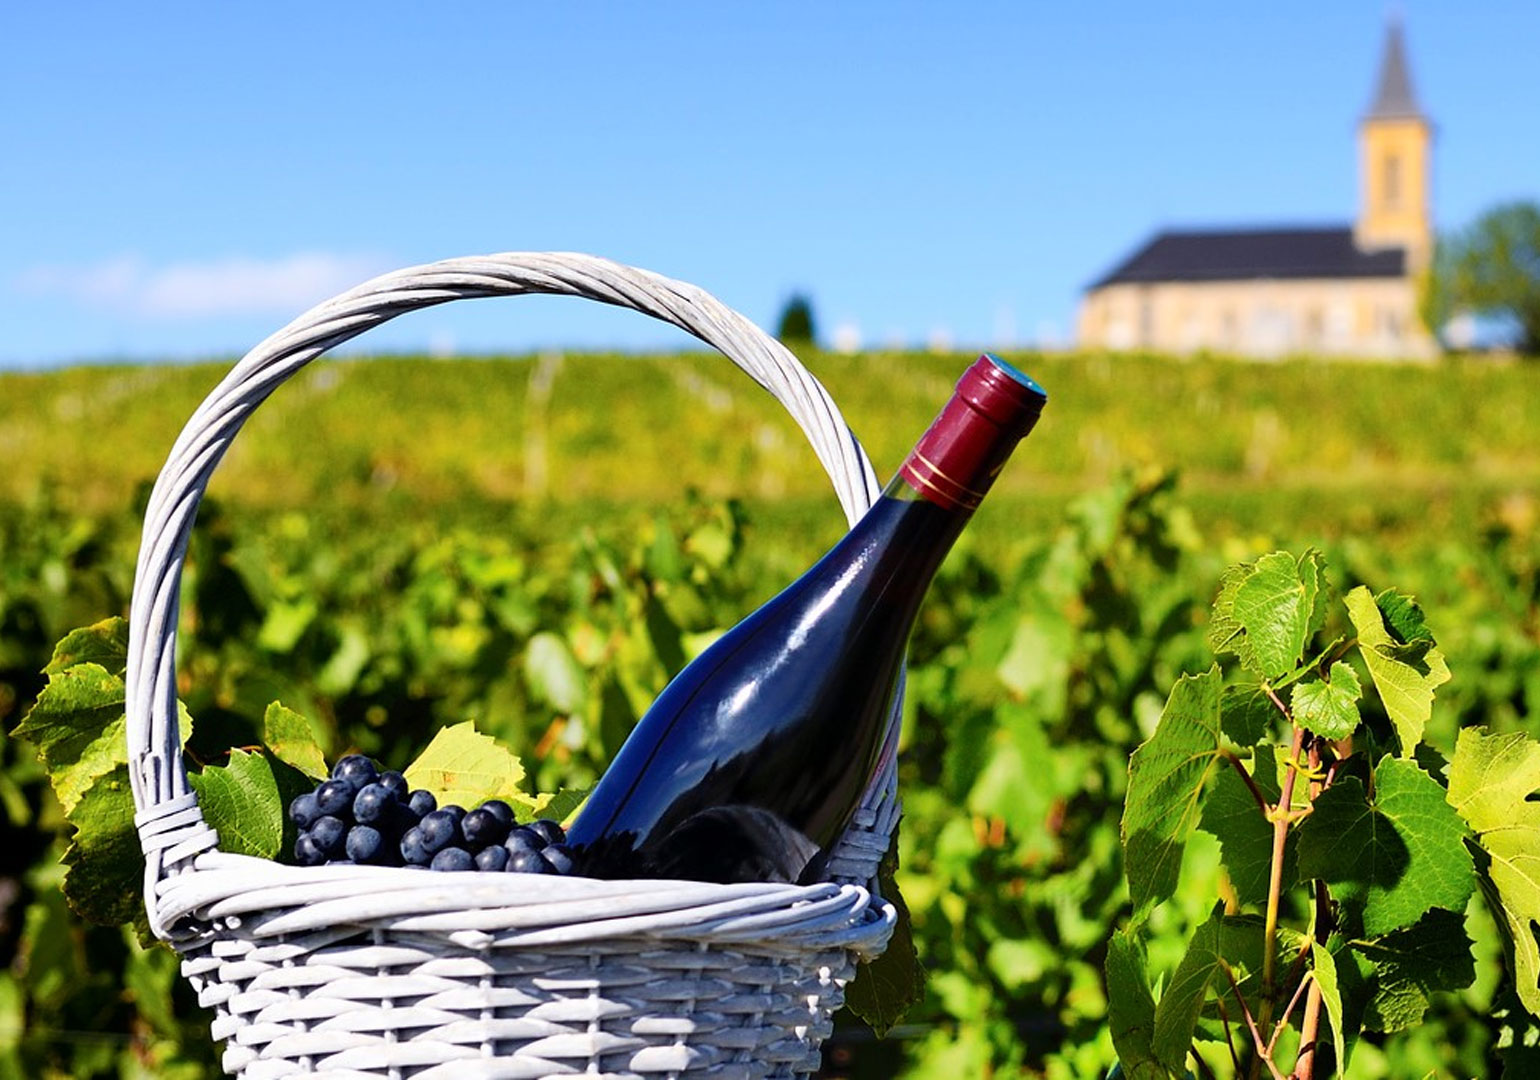 მოთხოვნის კლების გამო, საფრანგეთს ღვინის ჭარბი მარაგის განადგურება €200 მილიონი დაუჯდება